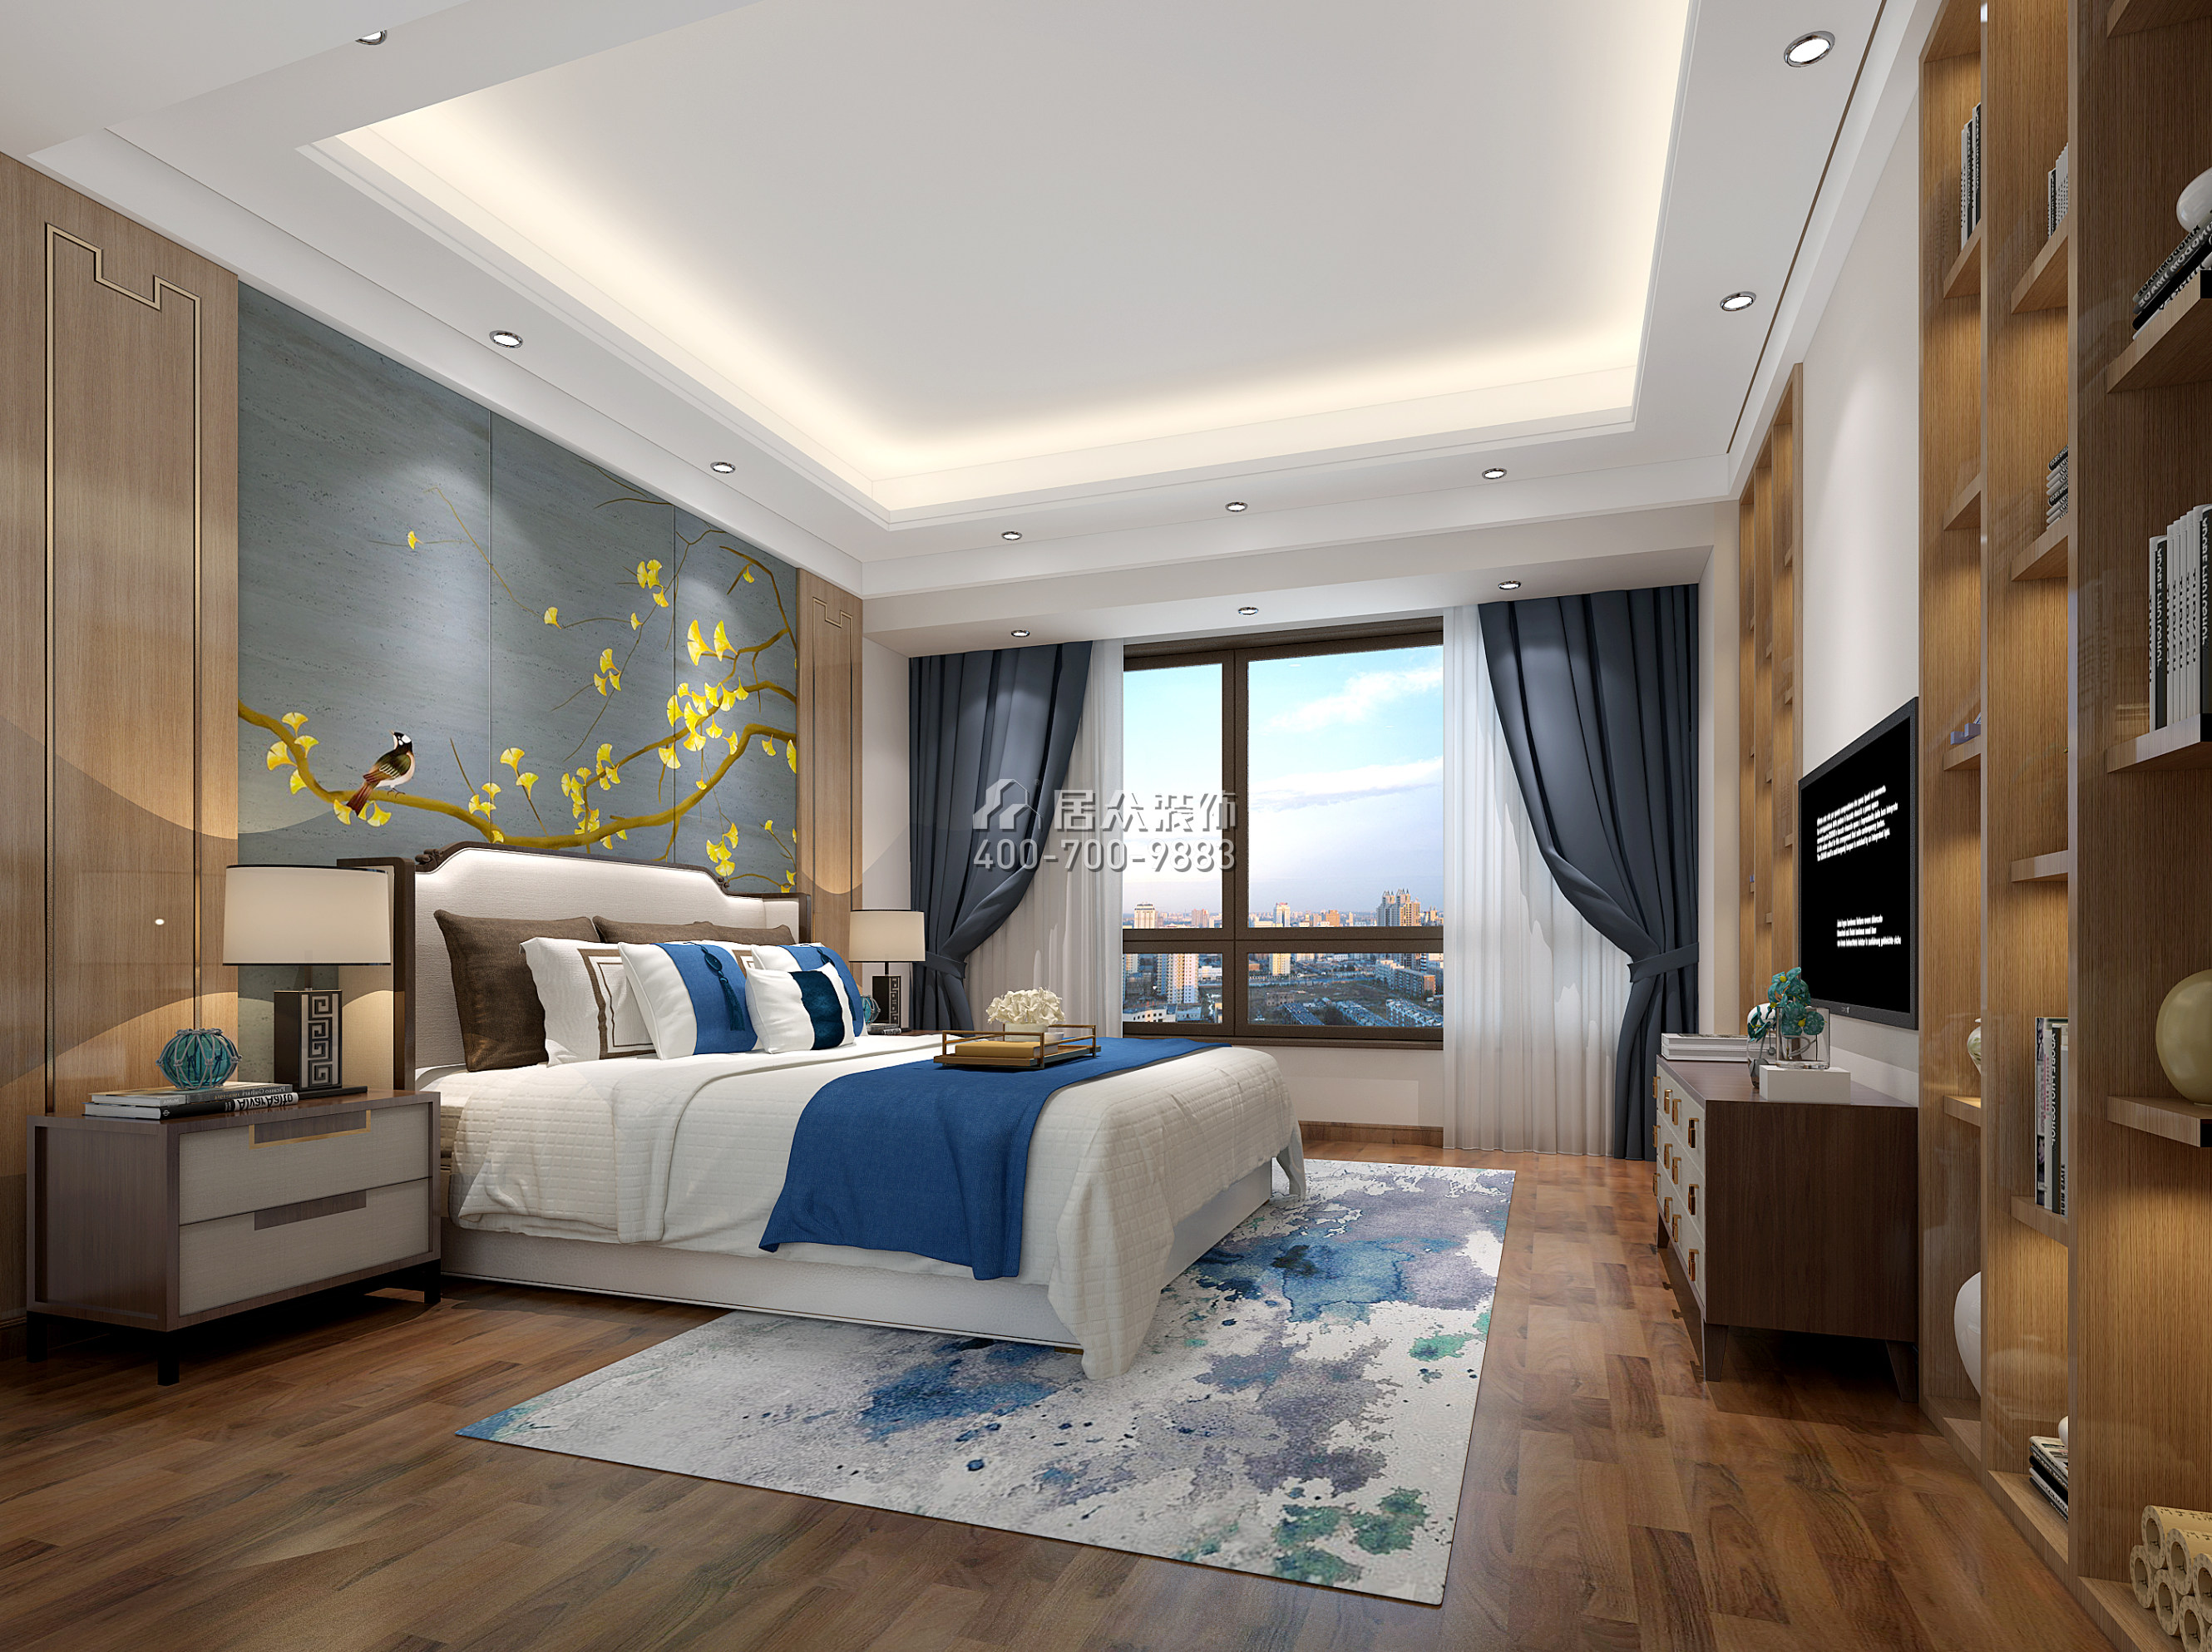 星河丹堤242平方米中式风格复式户型卧室装修效果图